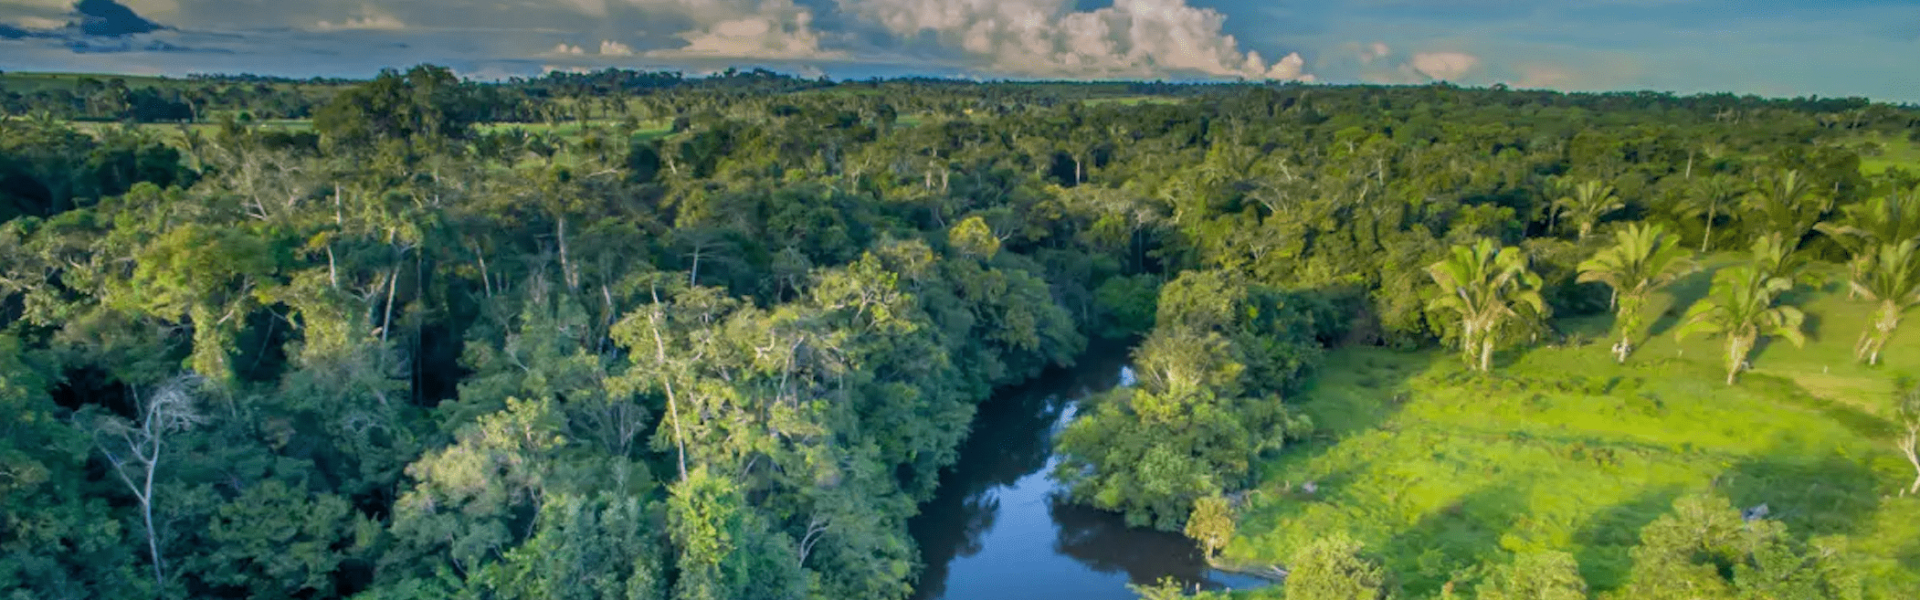 Fundo de investimento recebe financiamento de US$15 milhões para negócios na Amazônia